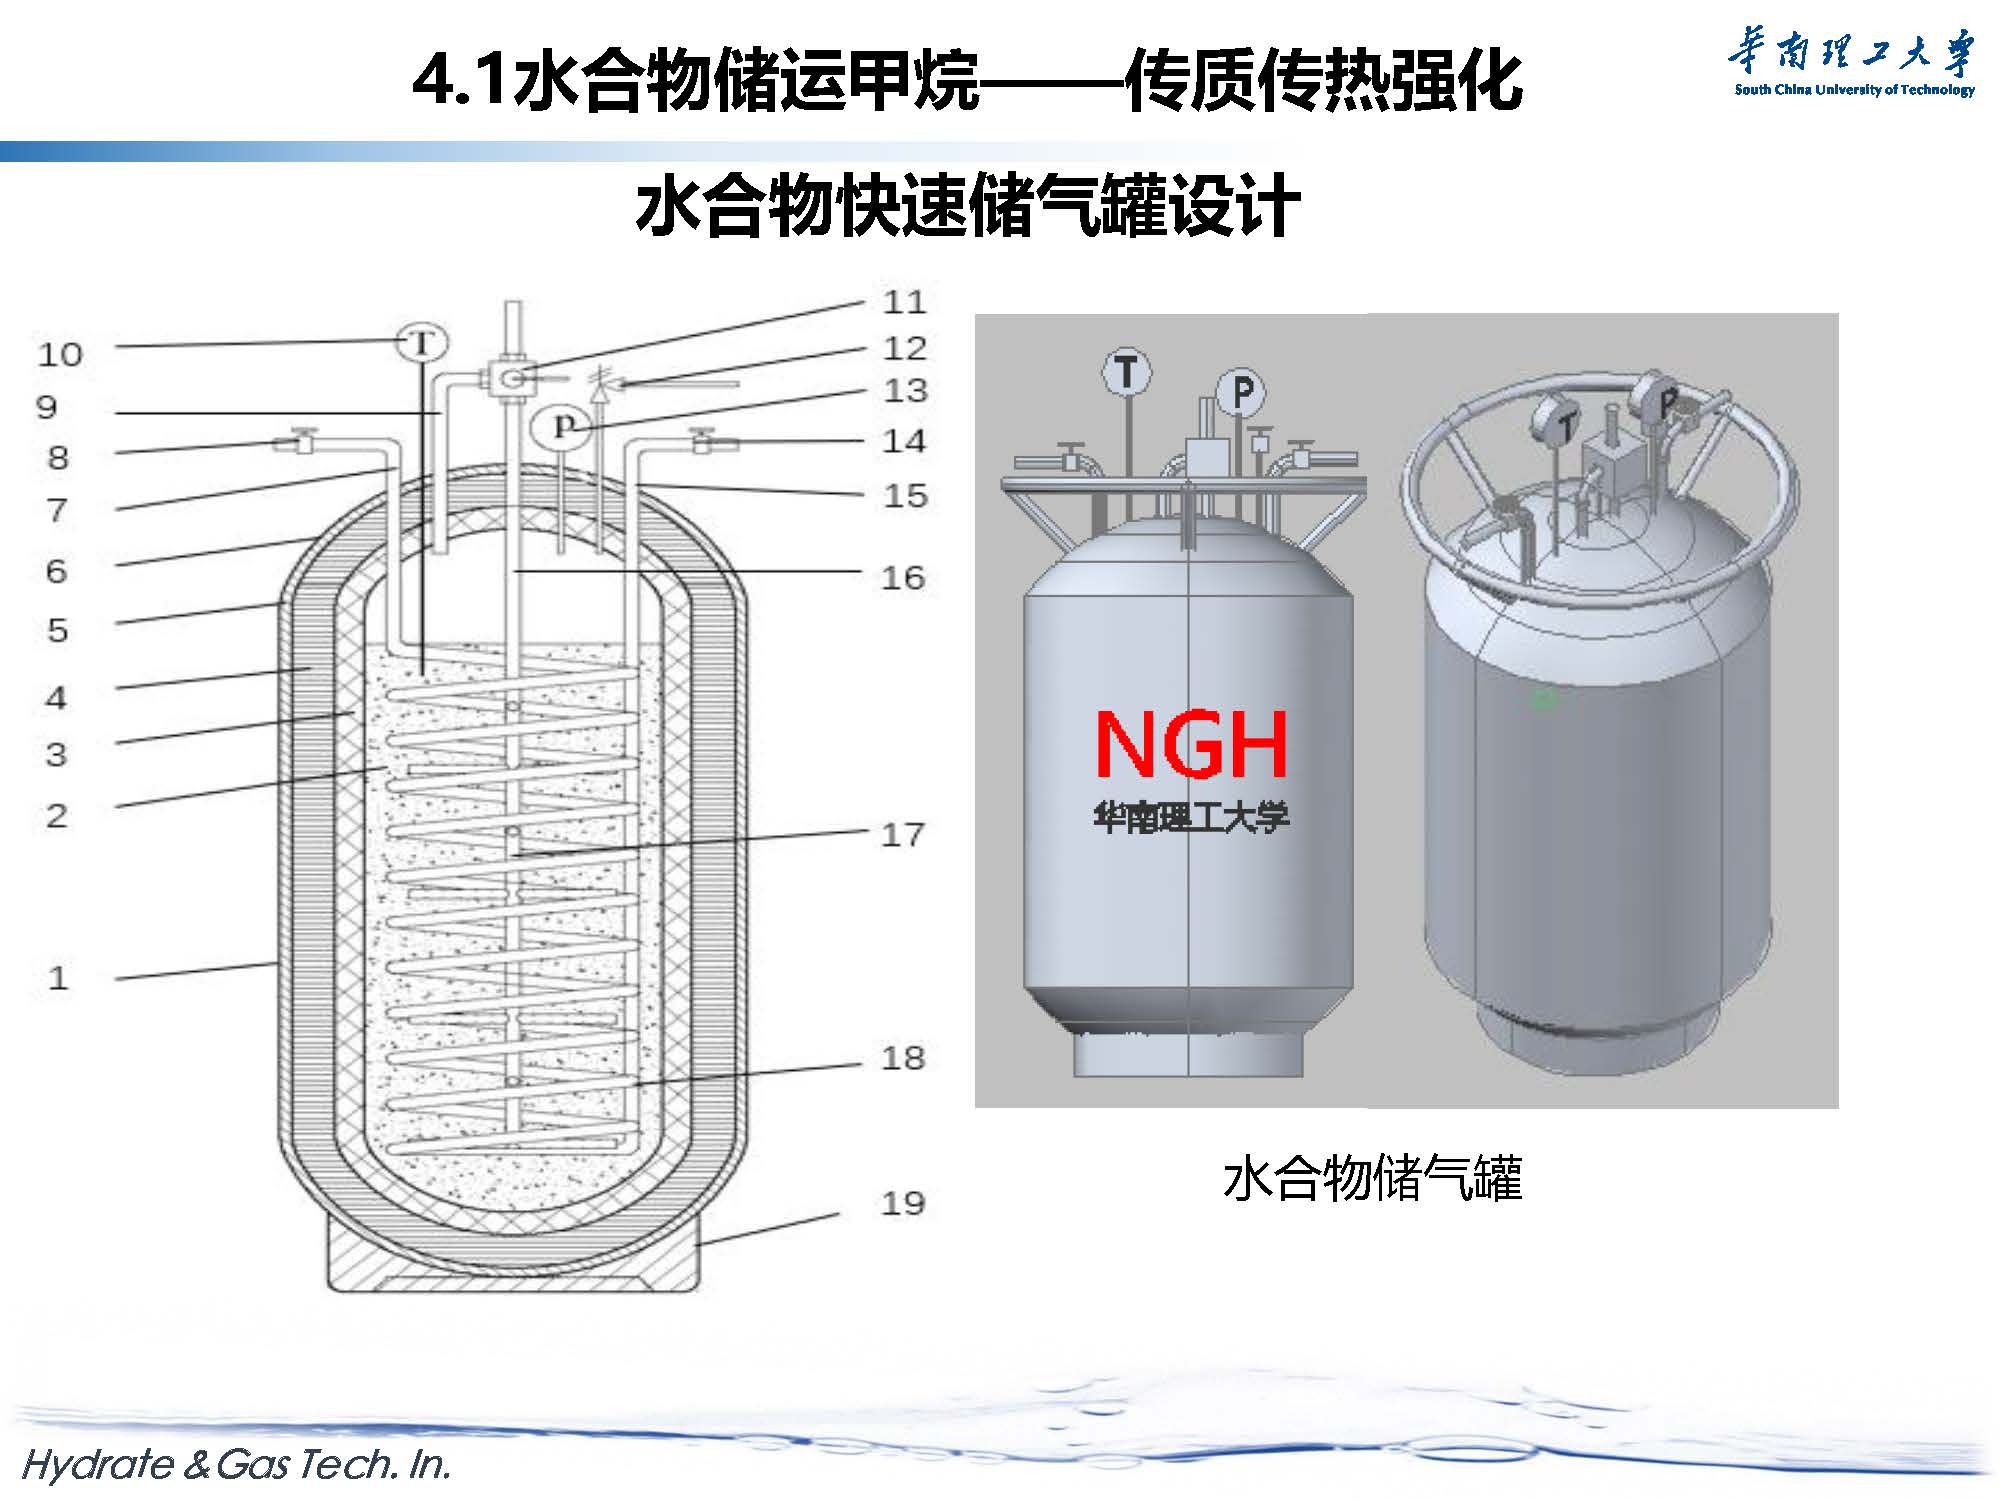 天然气水合物开采与新材料探索-forGJX_页面_44.jpg